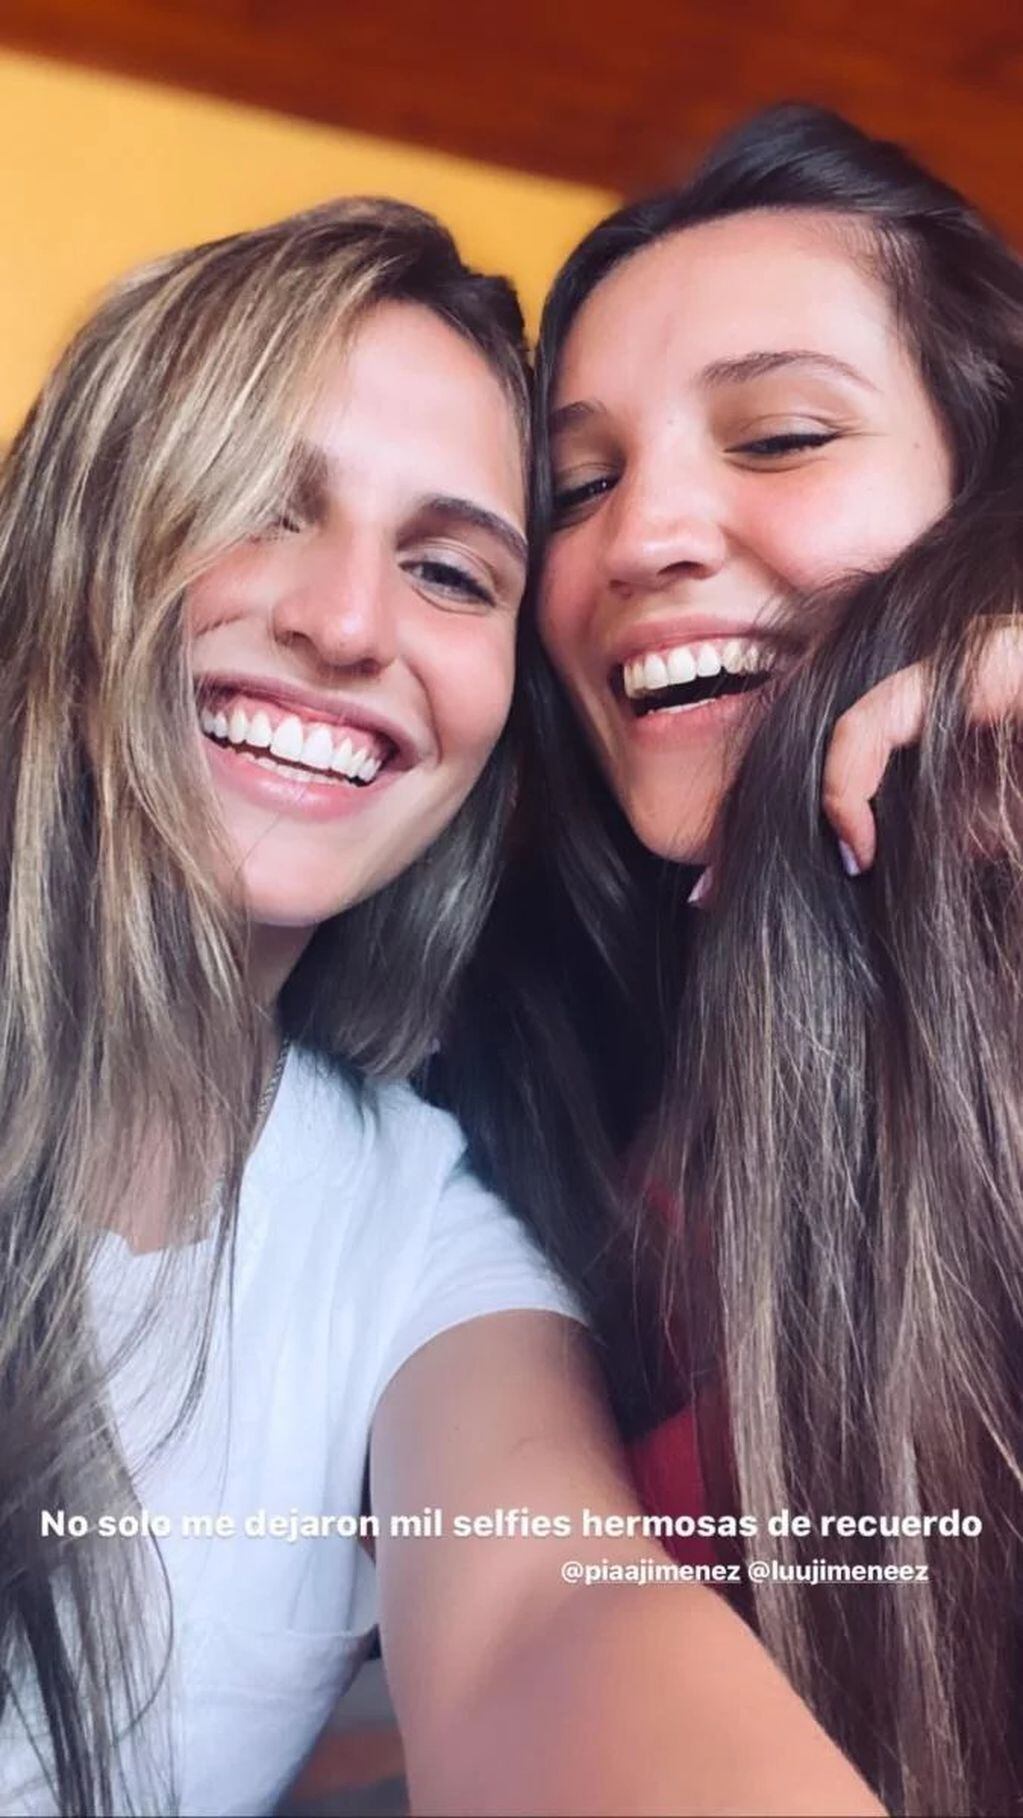 Lucía y Pía le robaron el celular a Sofía "Jujuy" Jiménez y sus fotos terminaron en Instagram  (Foto: Instagram/ @sofijuok)